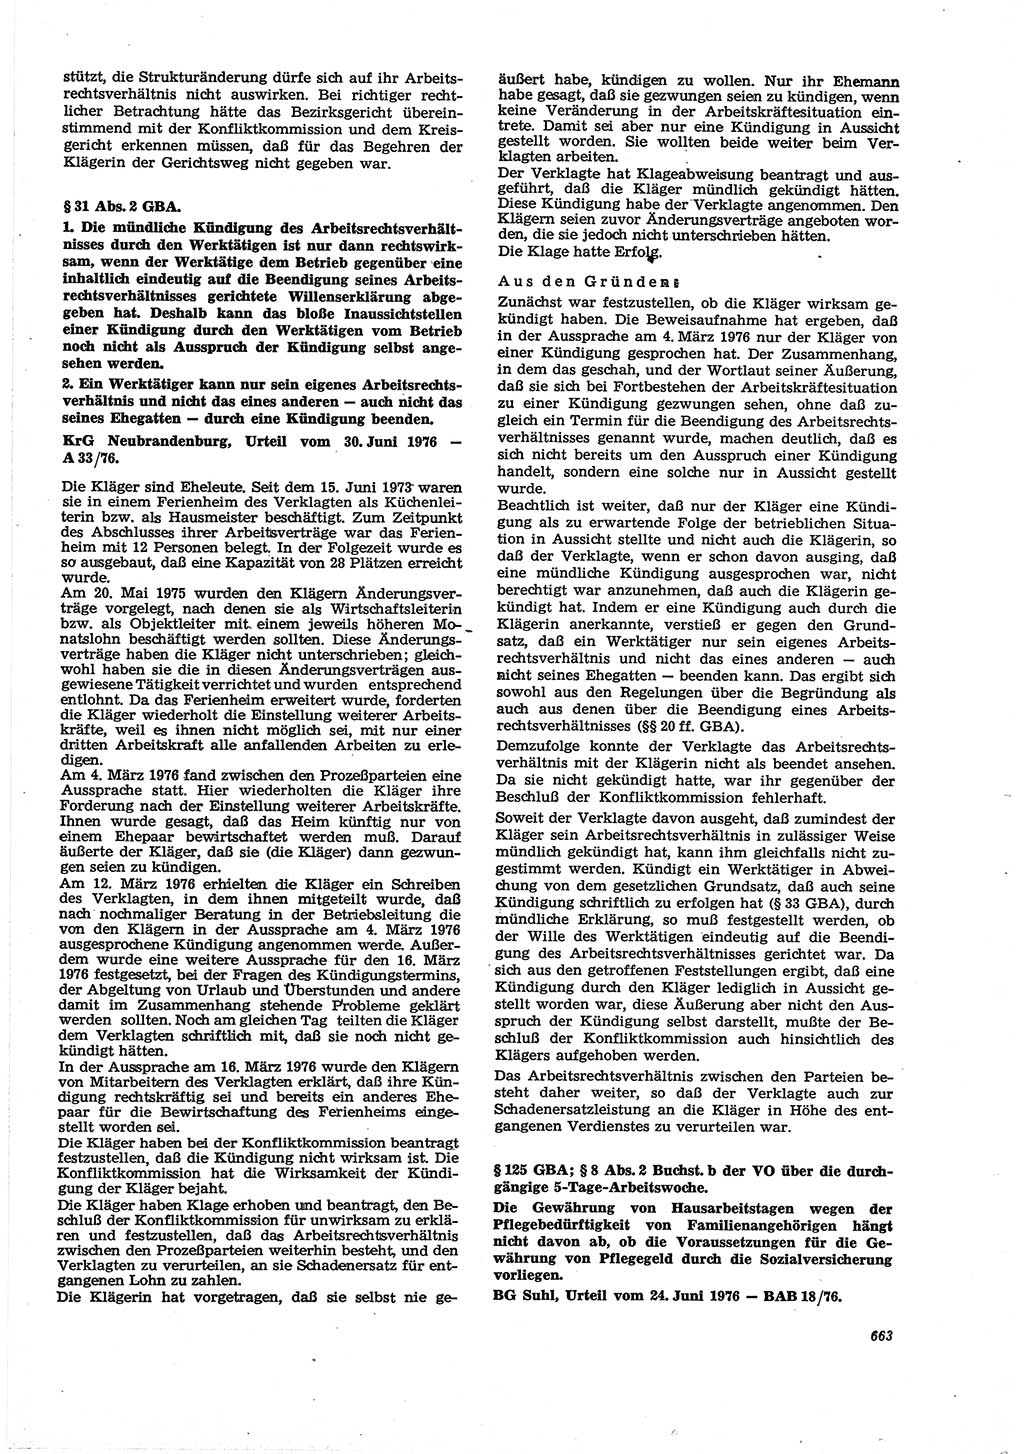 Neue Justiz (NJ), Zeitschrift für Recht und Rechtswissenschaft [Deutsche Demokratische Republik (DDR)], 30. Jahrgang 1976, Seite 663 (NJ DDR 1976, S. 663)